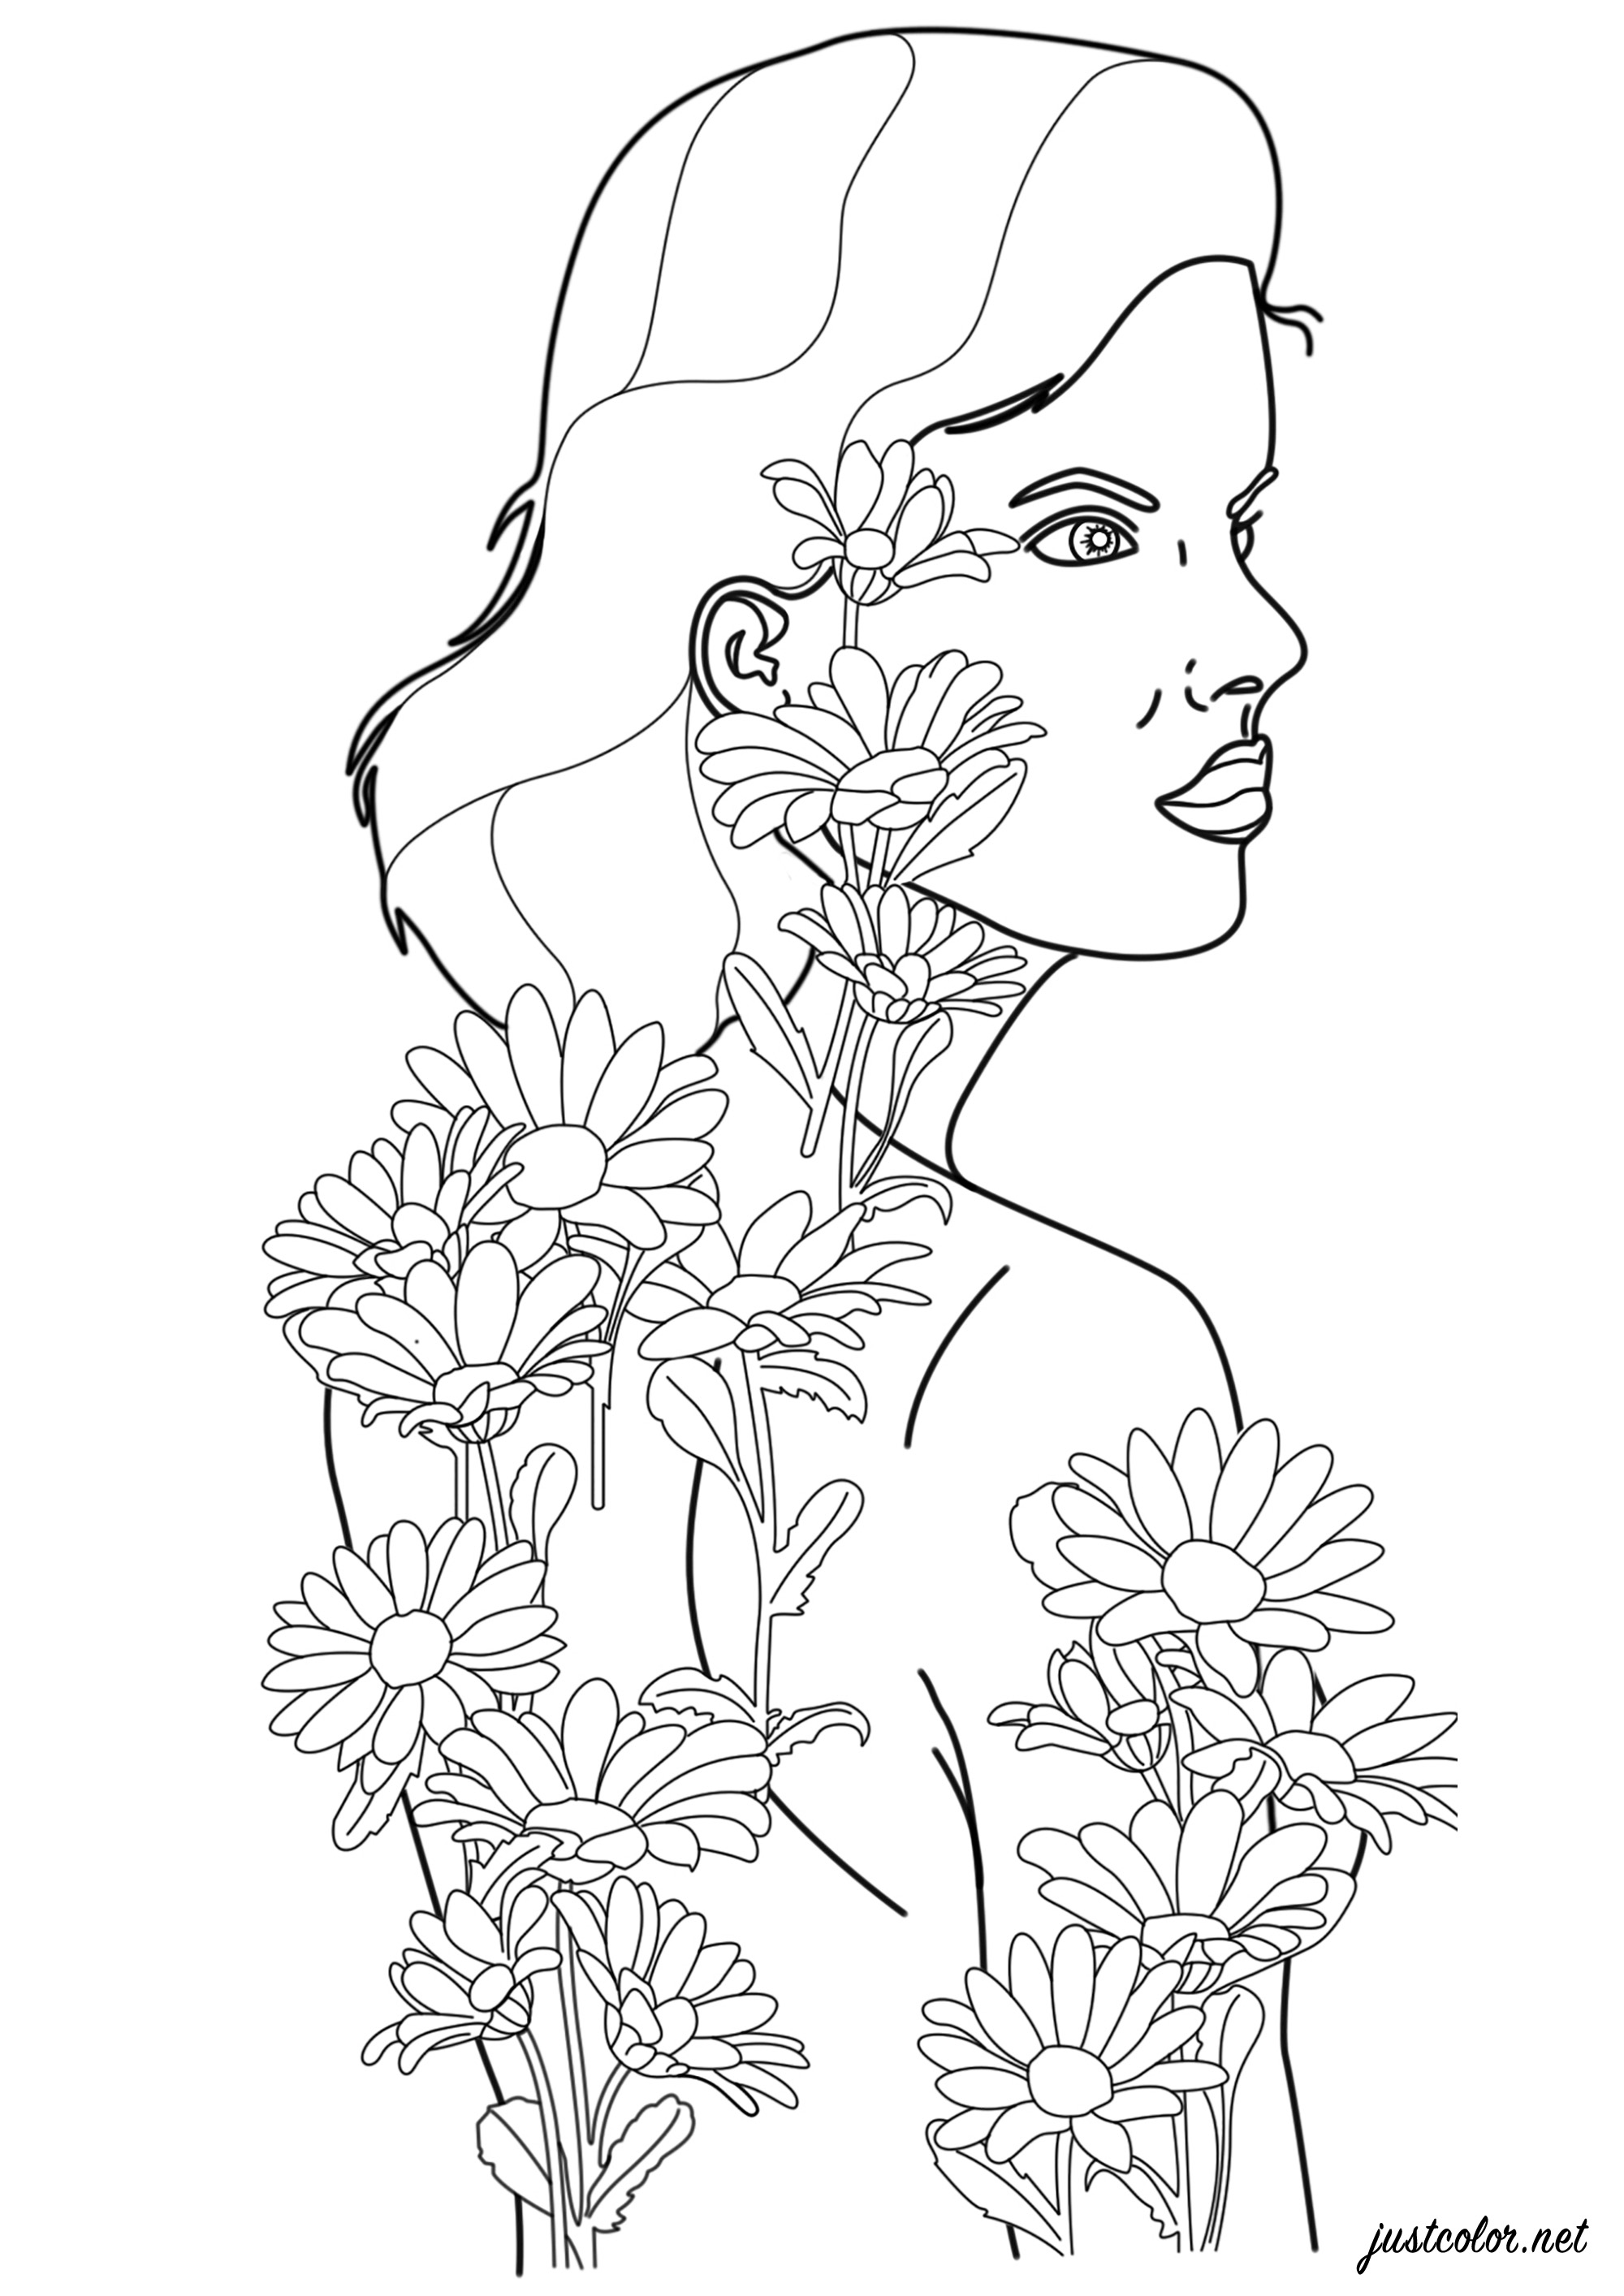 Mulher com tatuagens de flores que ganham vida e se tornam reais